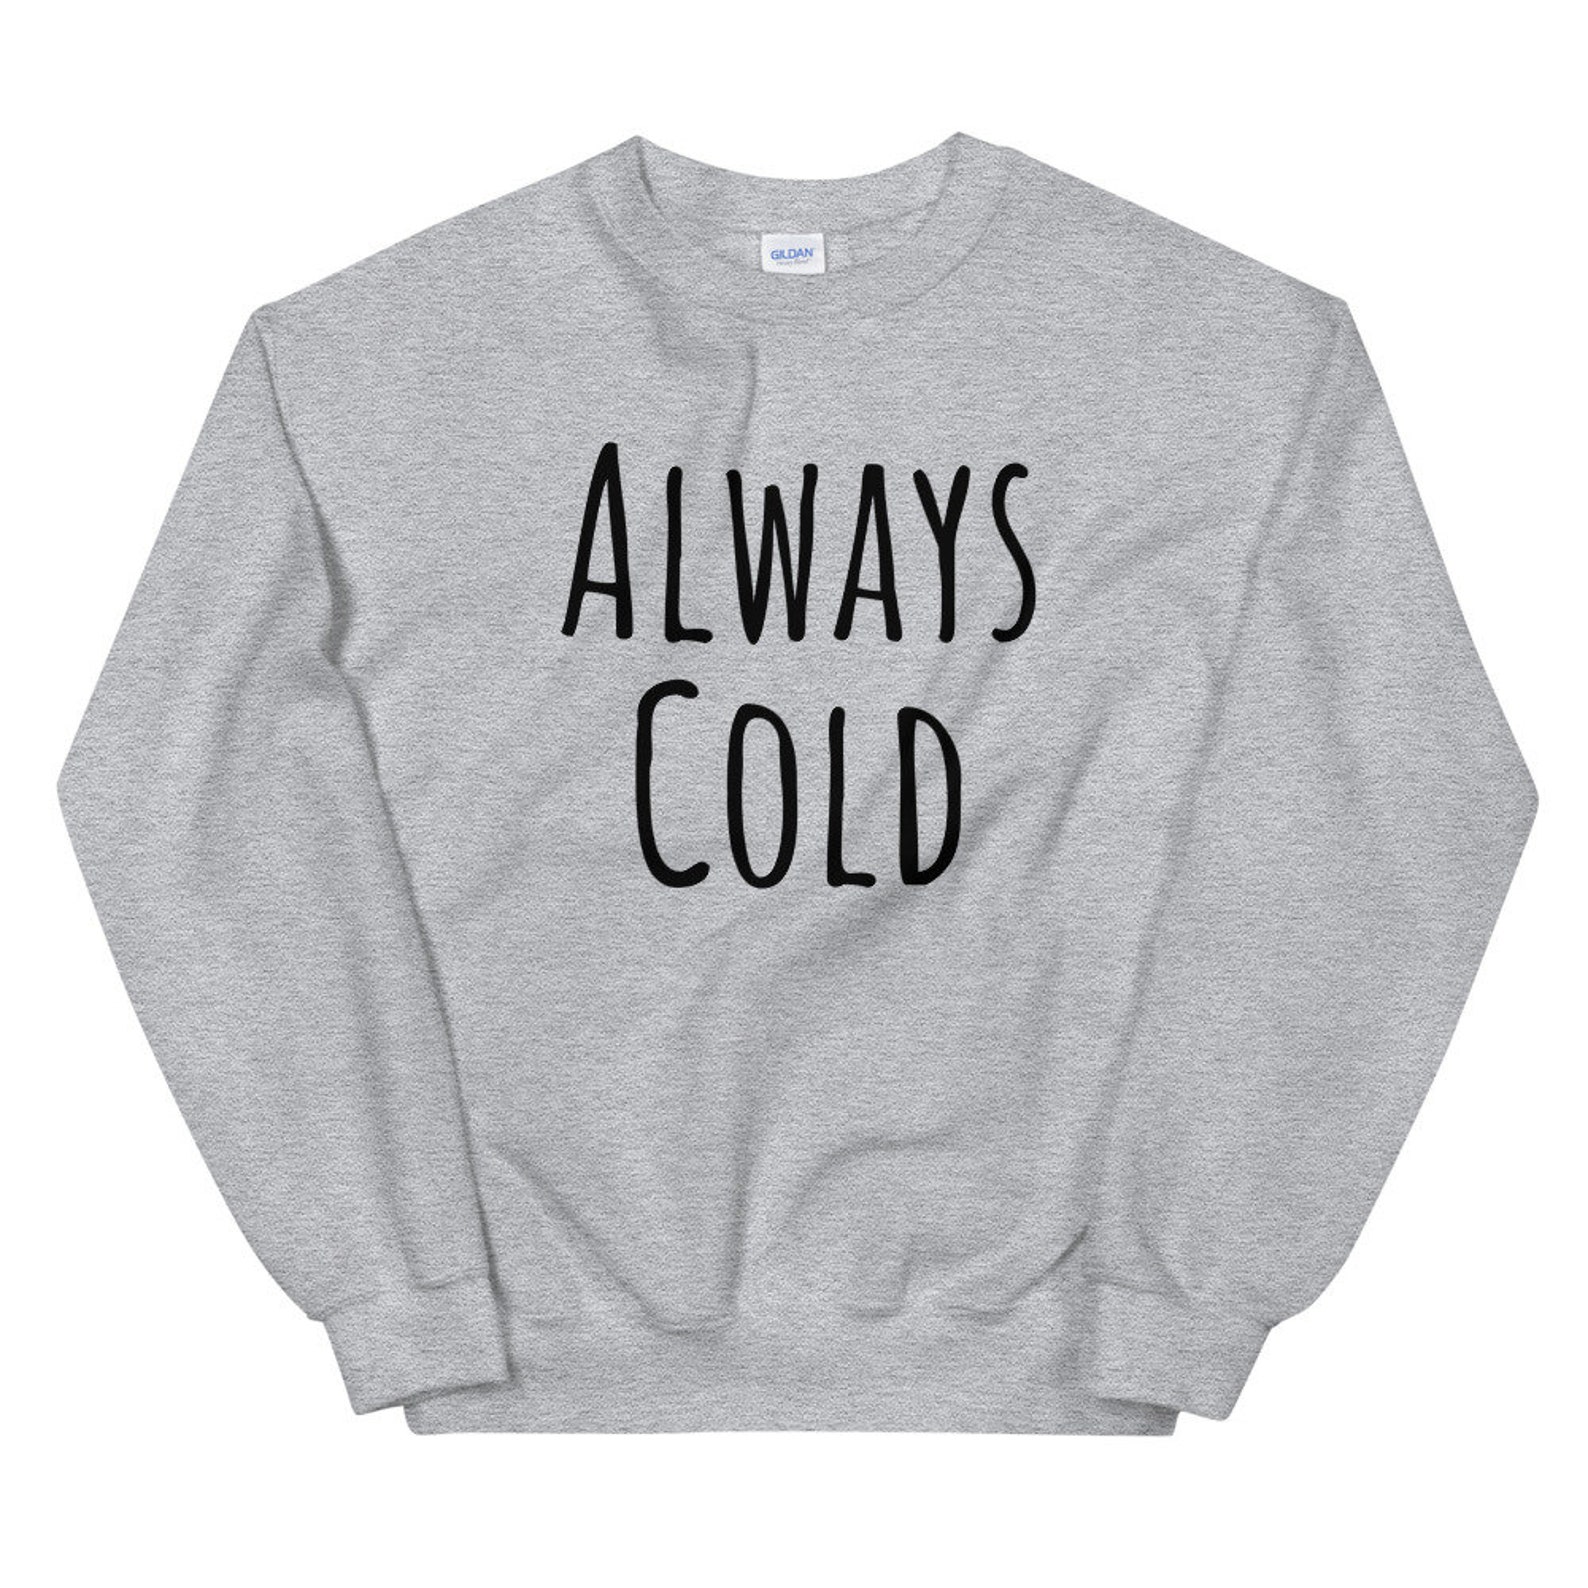 Always Cold Sweatshirt Always Cold Shirt Freaking Freezing | Etsy